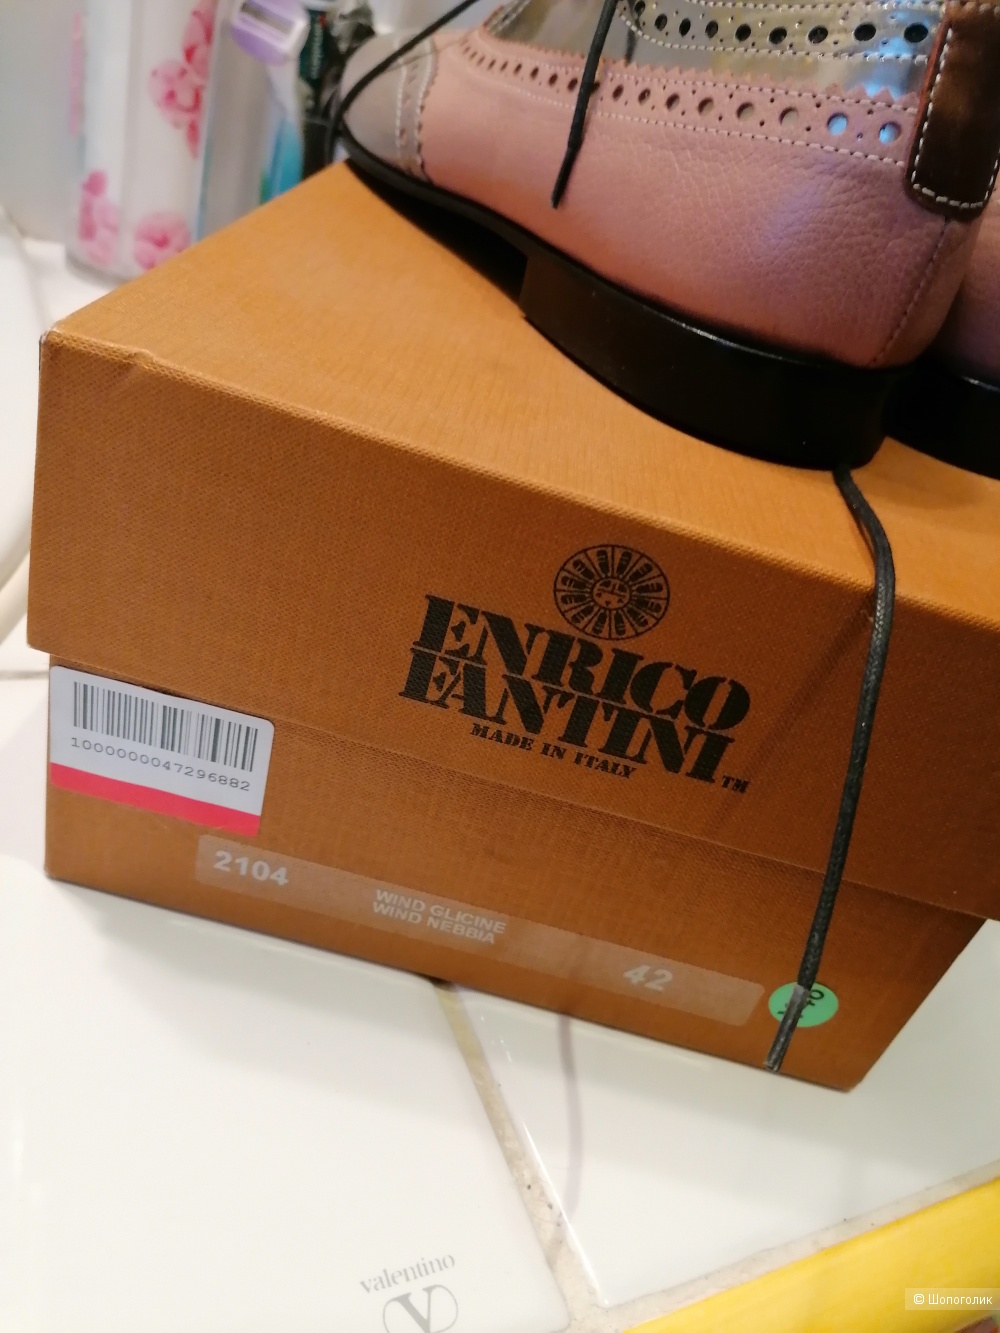 Кожаные туфли Enrico Fantini 42 размера